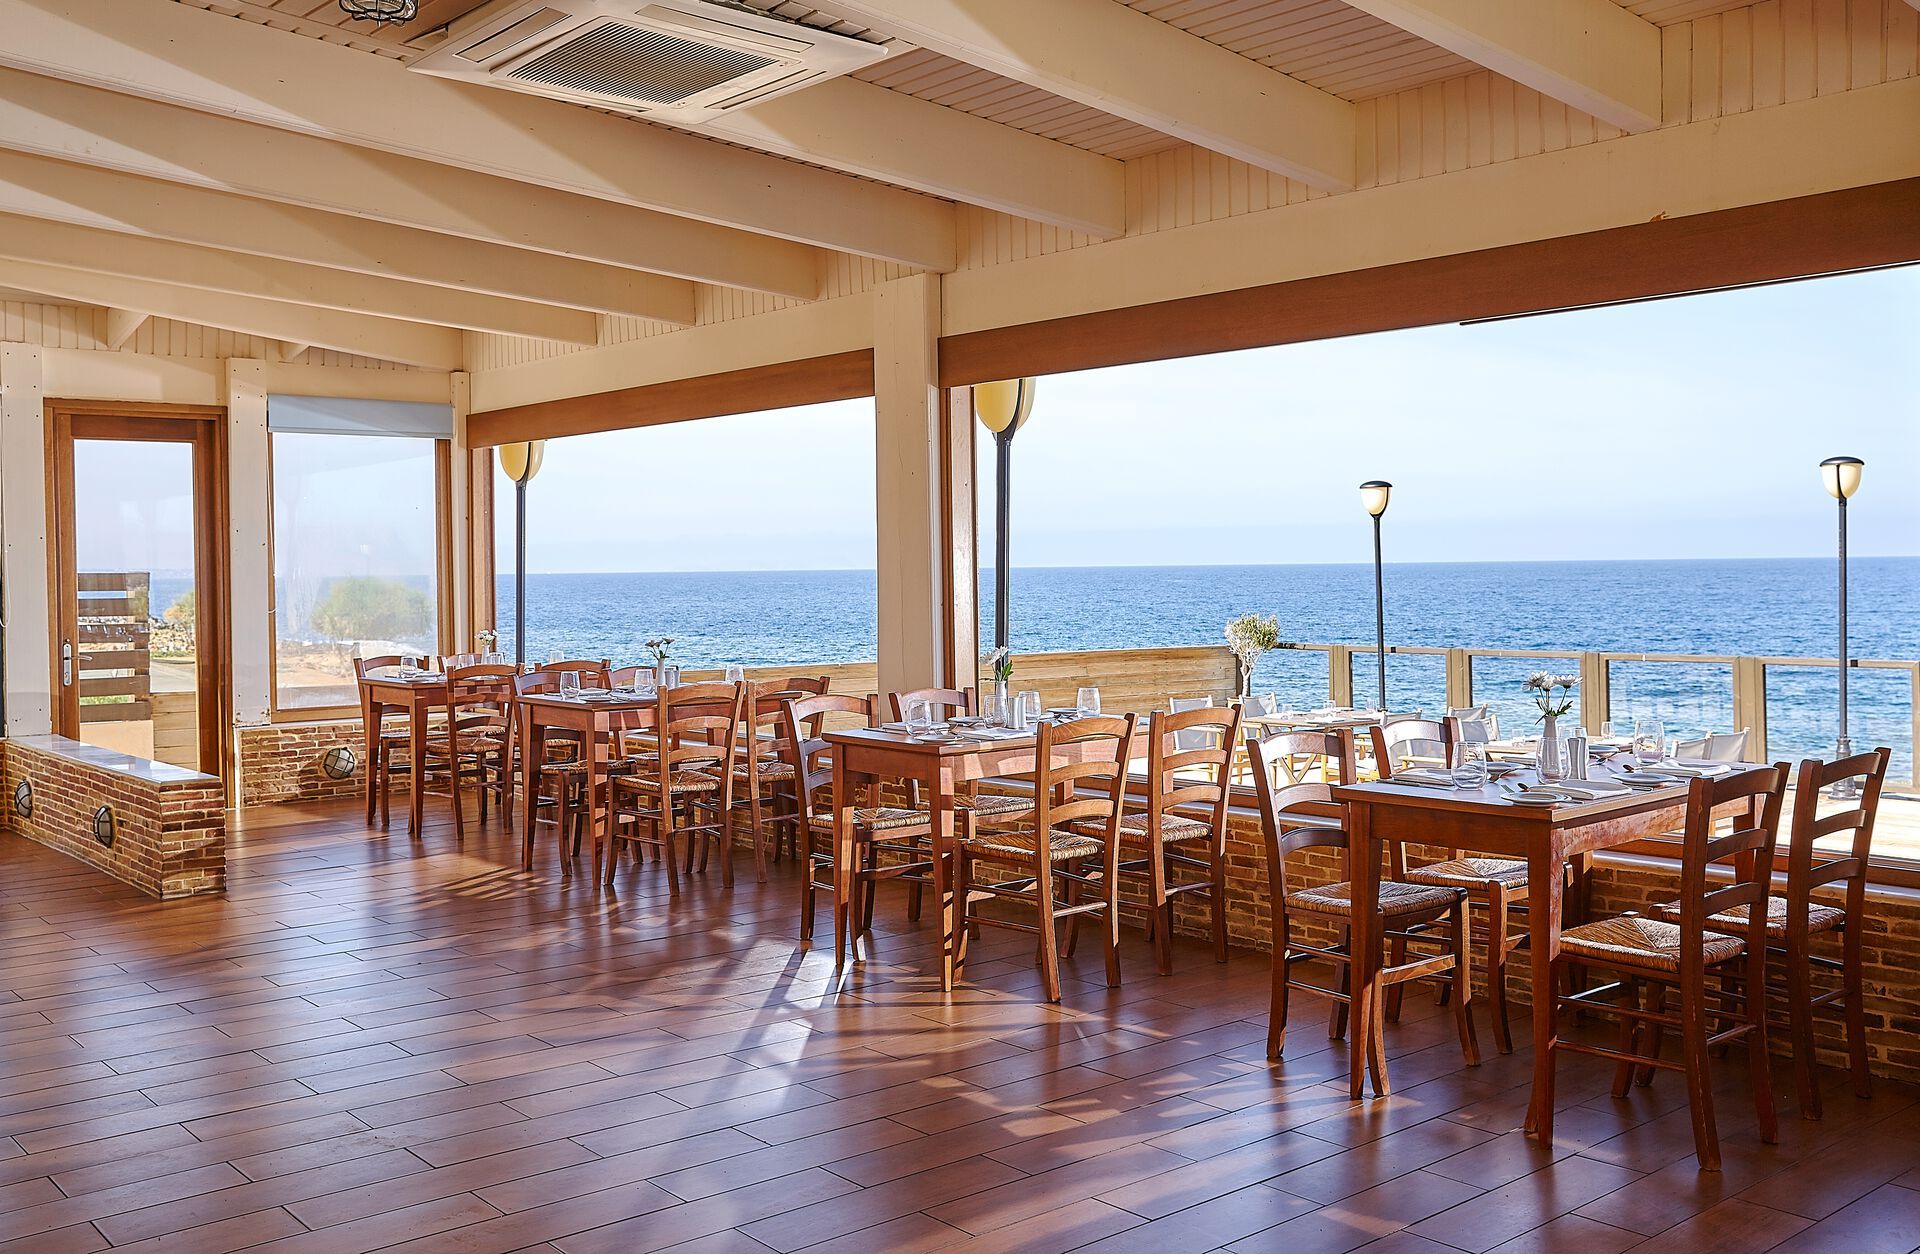 Crète - Grèce - Iles grecques - Hôtel Vasia Resort & Spa 4*